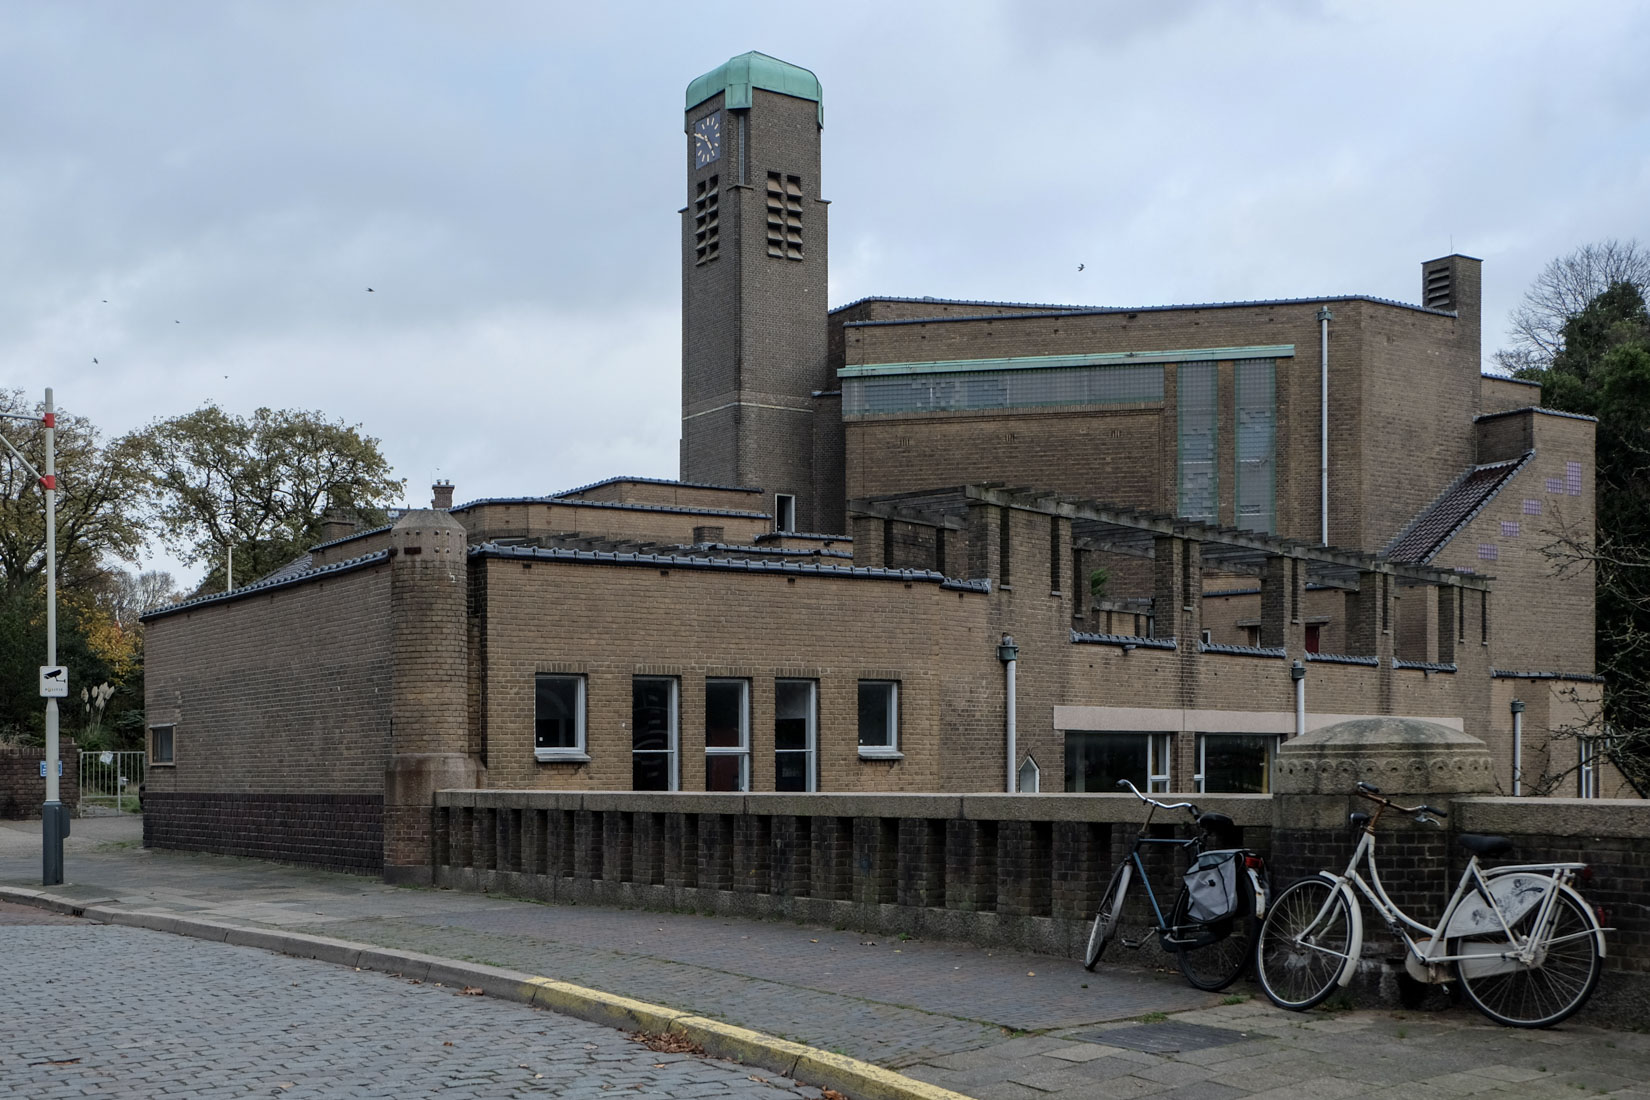 Hendrik Petrus Berlage - Christian Science Church The Hague